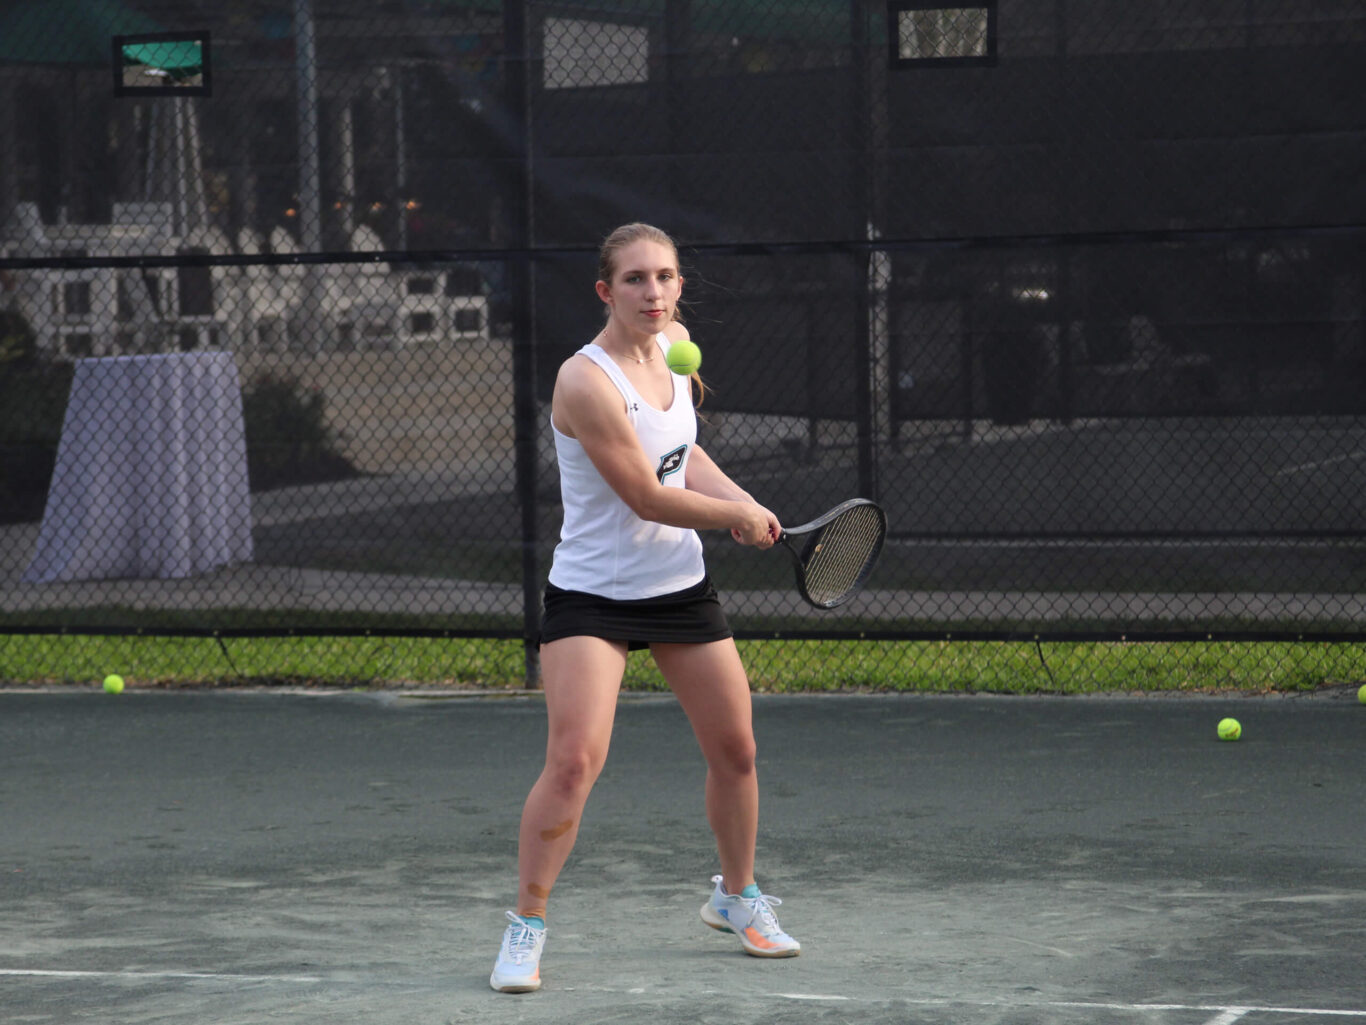 A girl wielding a tennis racket on a tennis court.